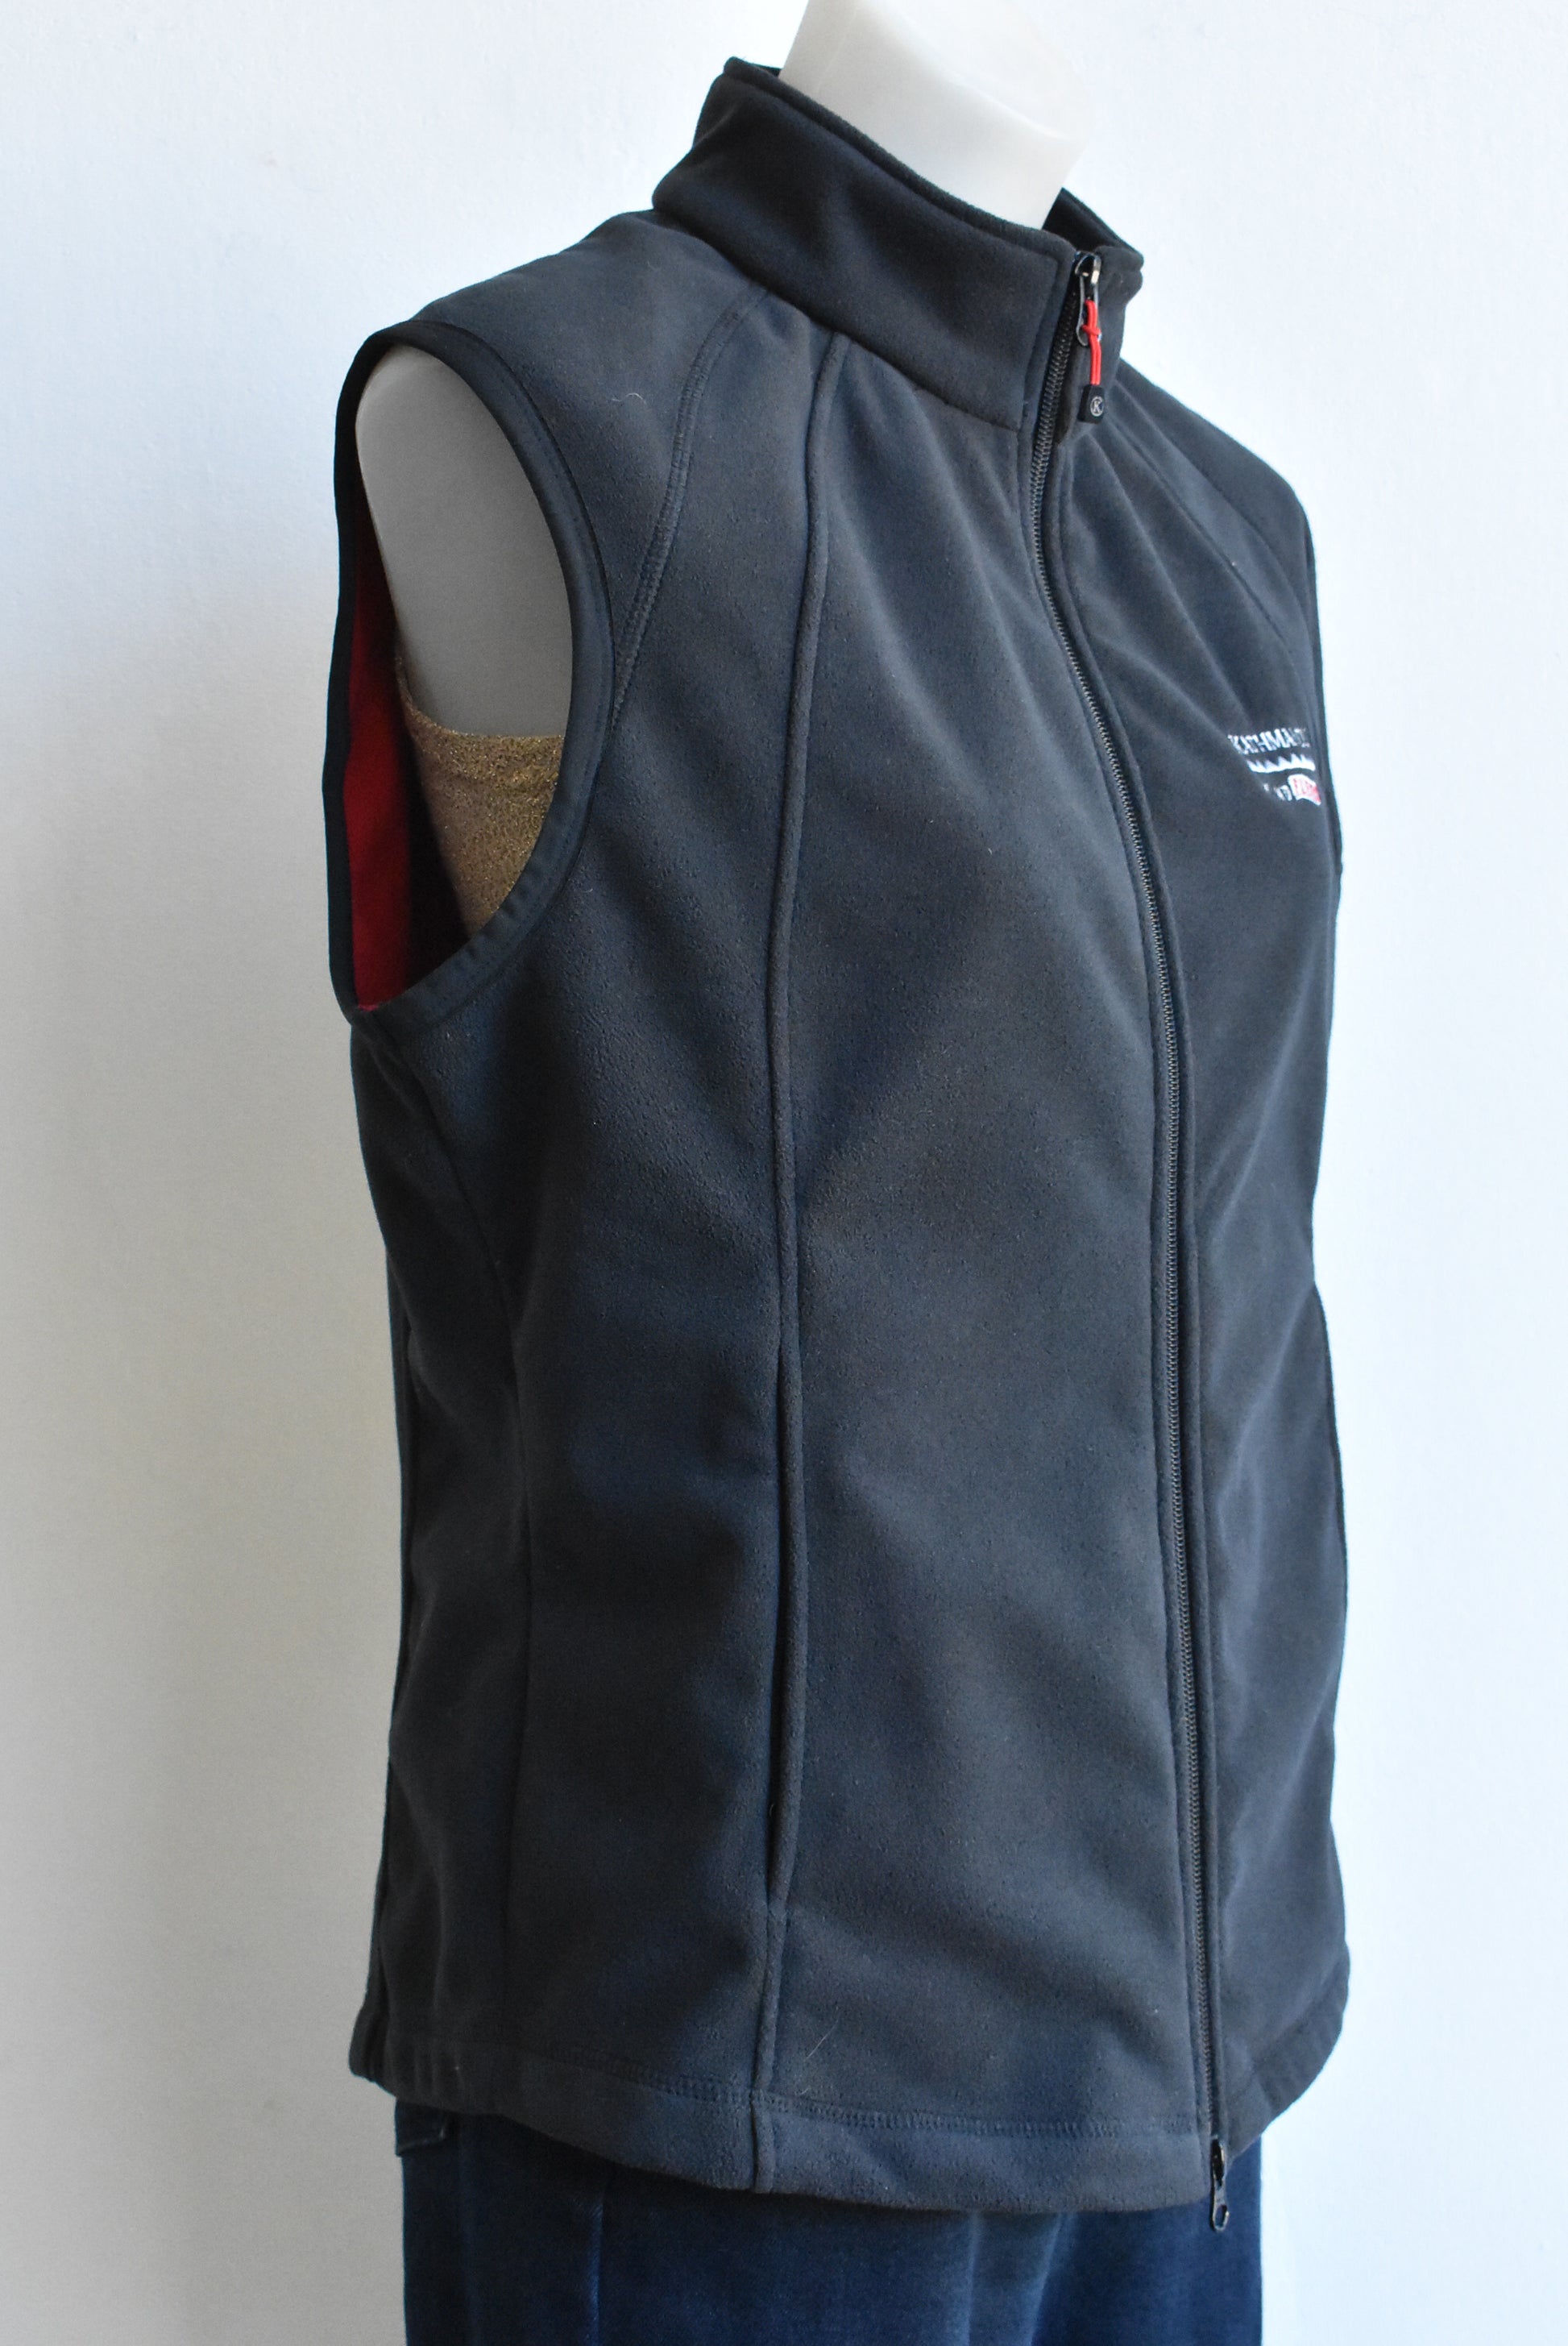 Kathmandu wind fleece black vest, size 14 – Shop on Carroll Online